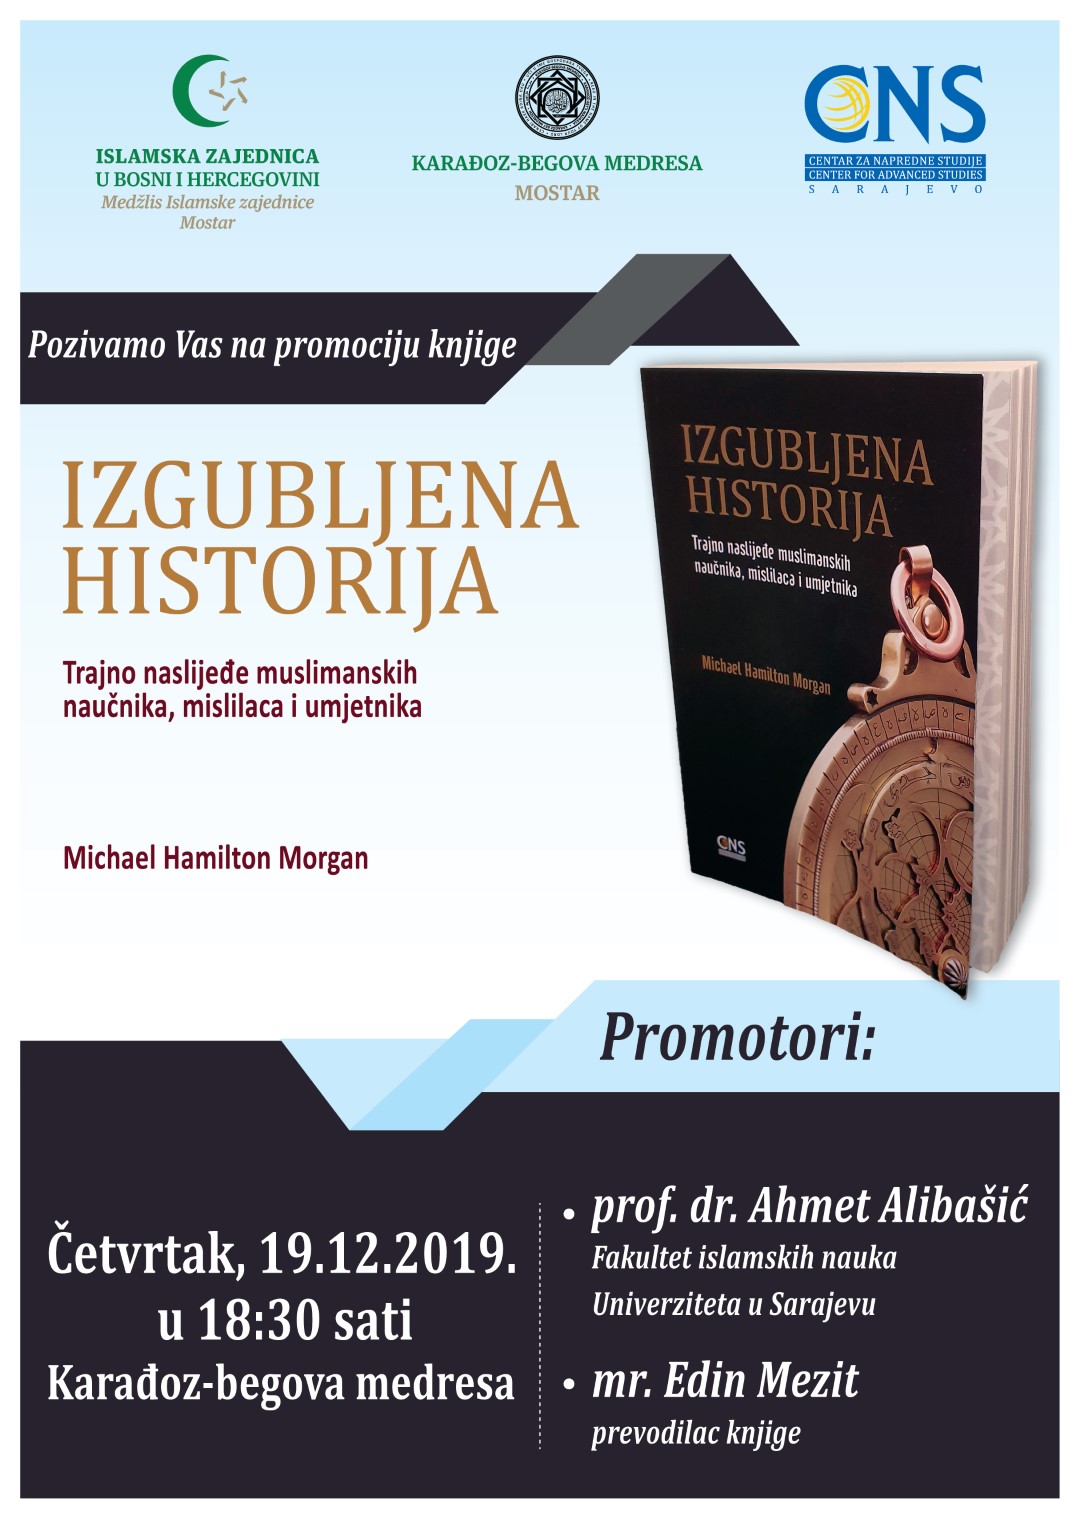 Promocija knjige “Izgubljena historija” autora Michael H. Morgana u Mostaru